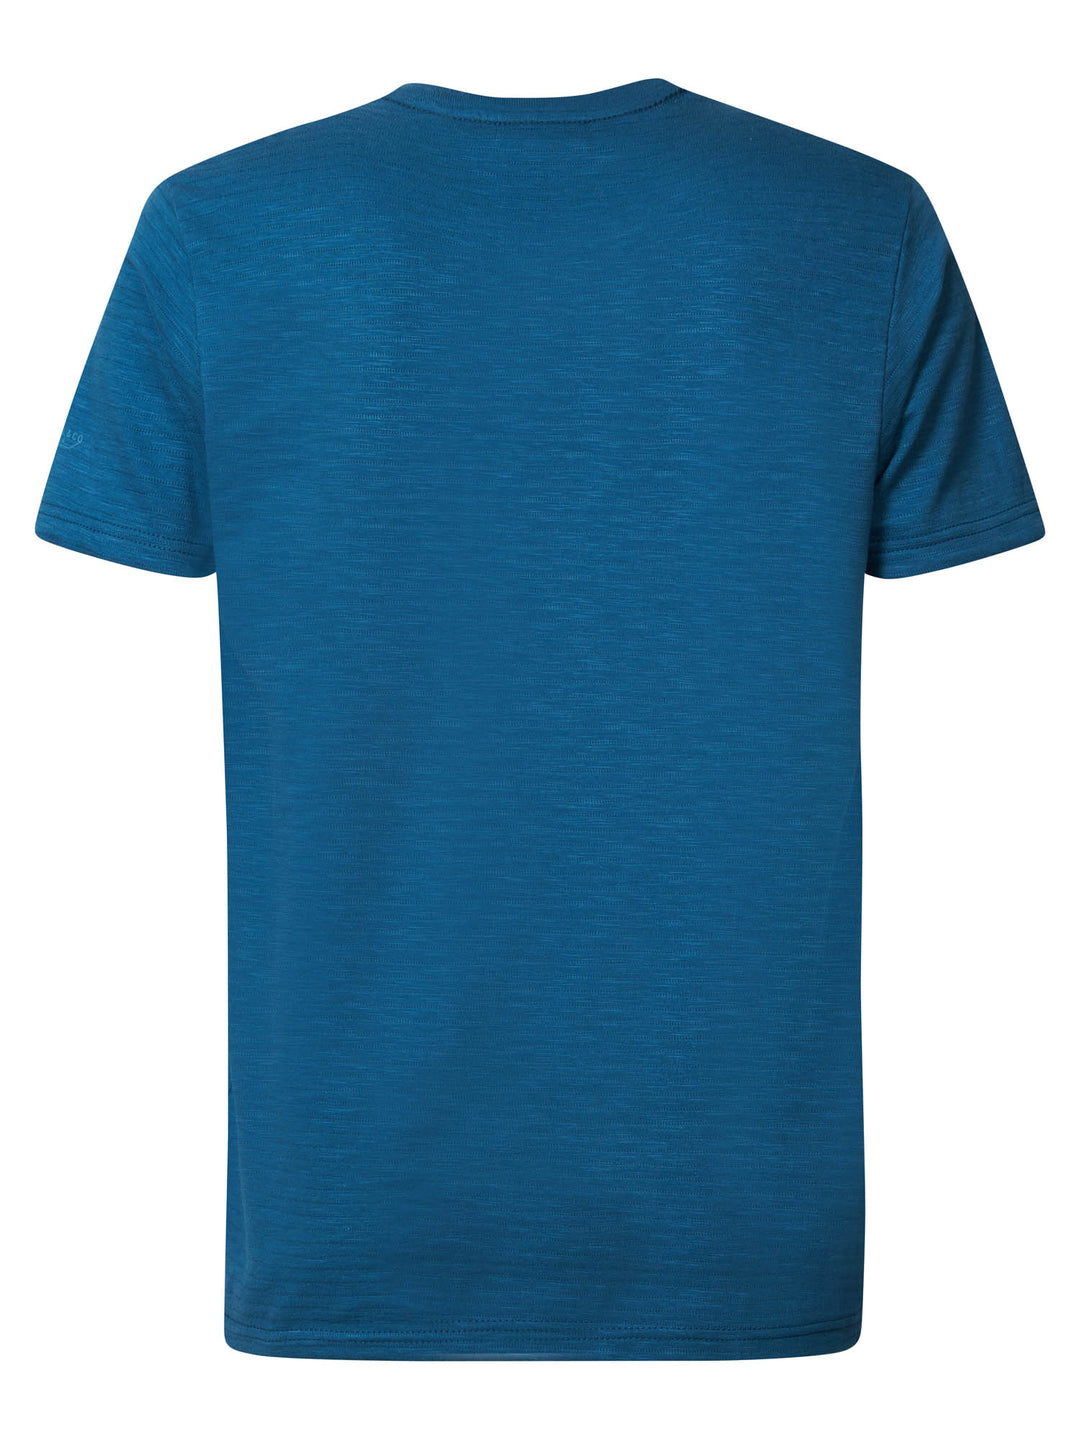 Petrol - Heren Shirt - M-3020-TSR619 - 5164 Blue Race